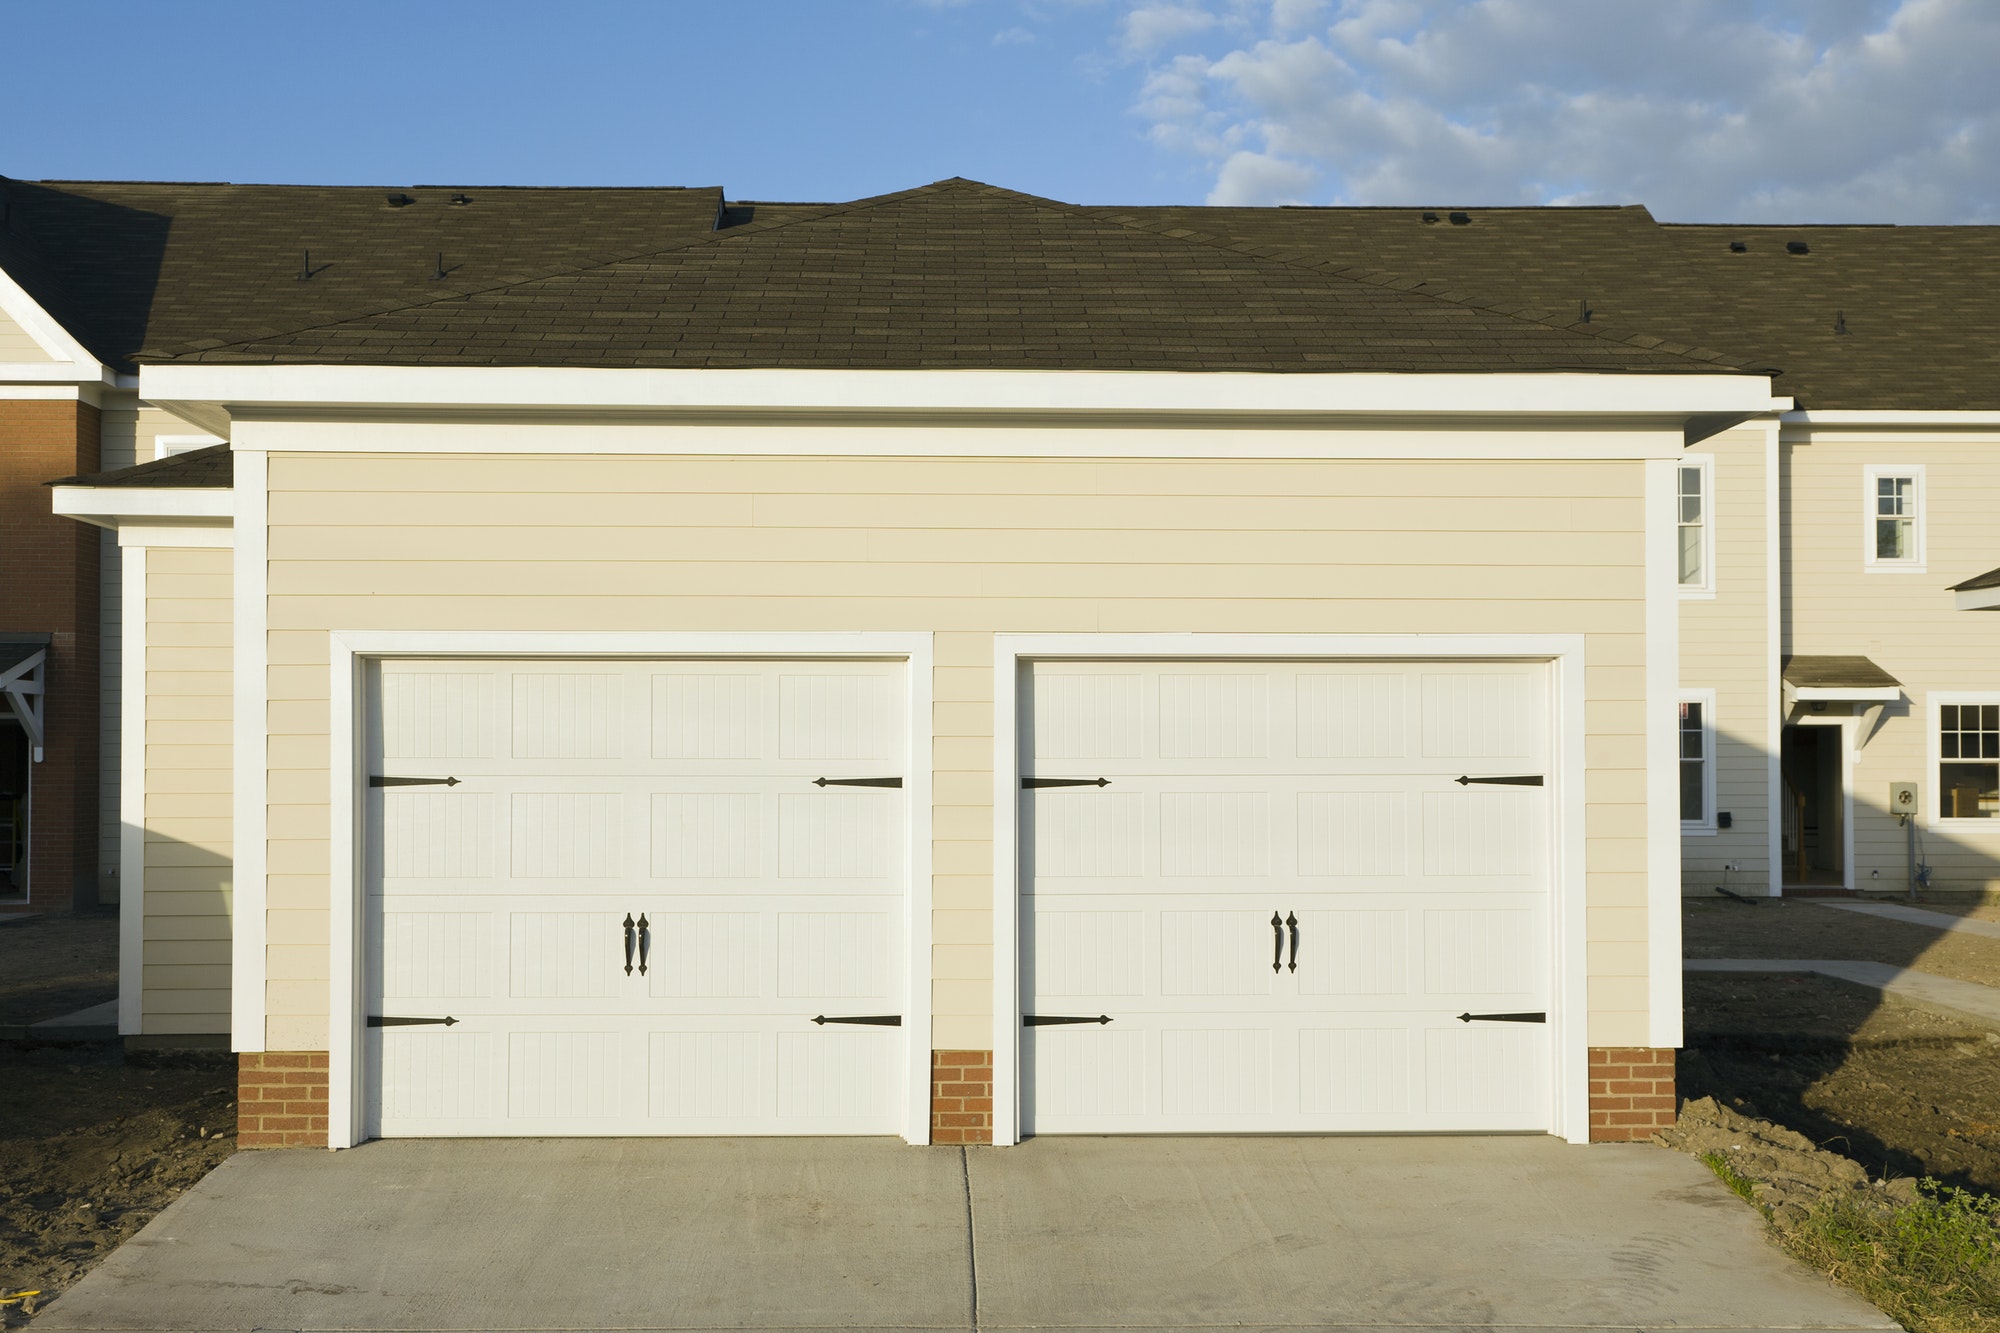  16 X 7 Garage Door Edmonton with Simple Decor